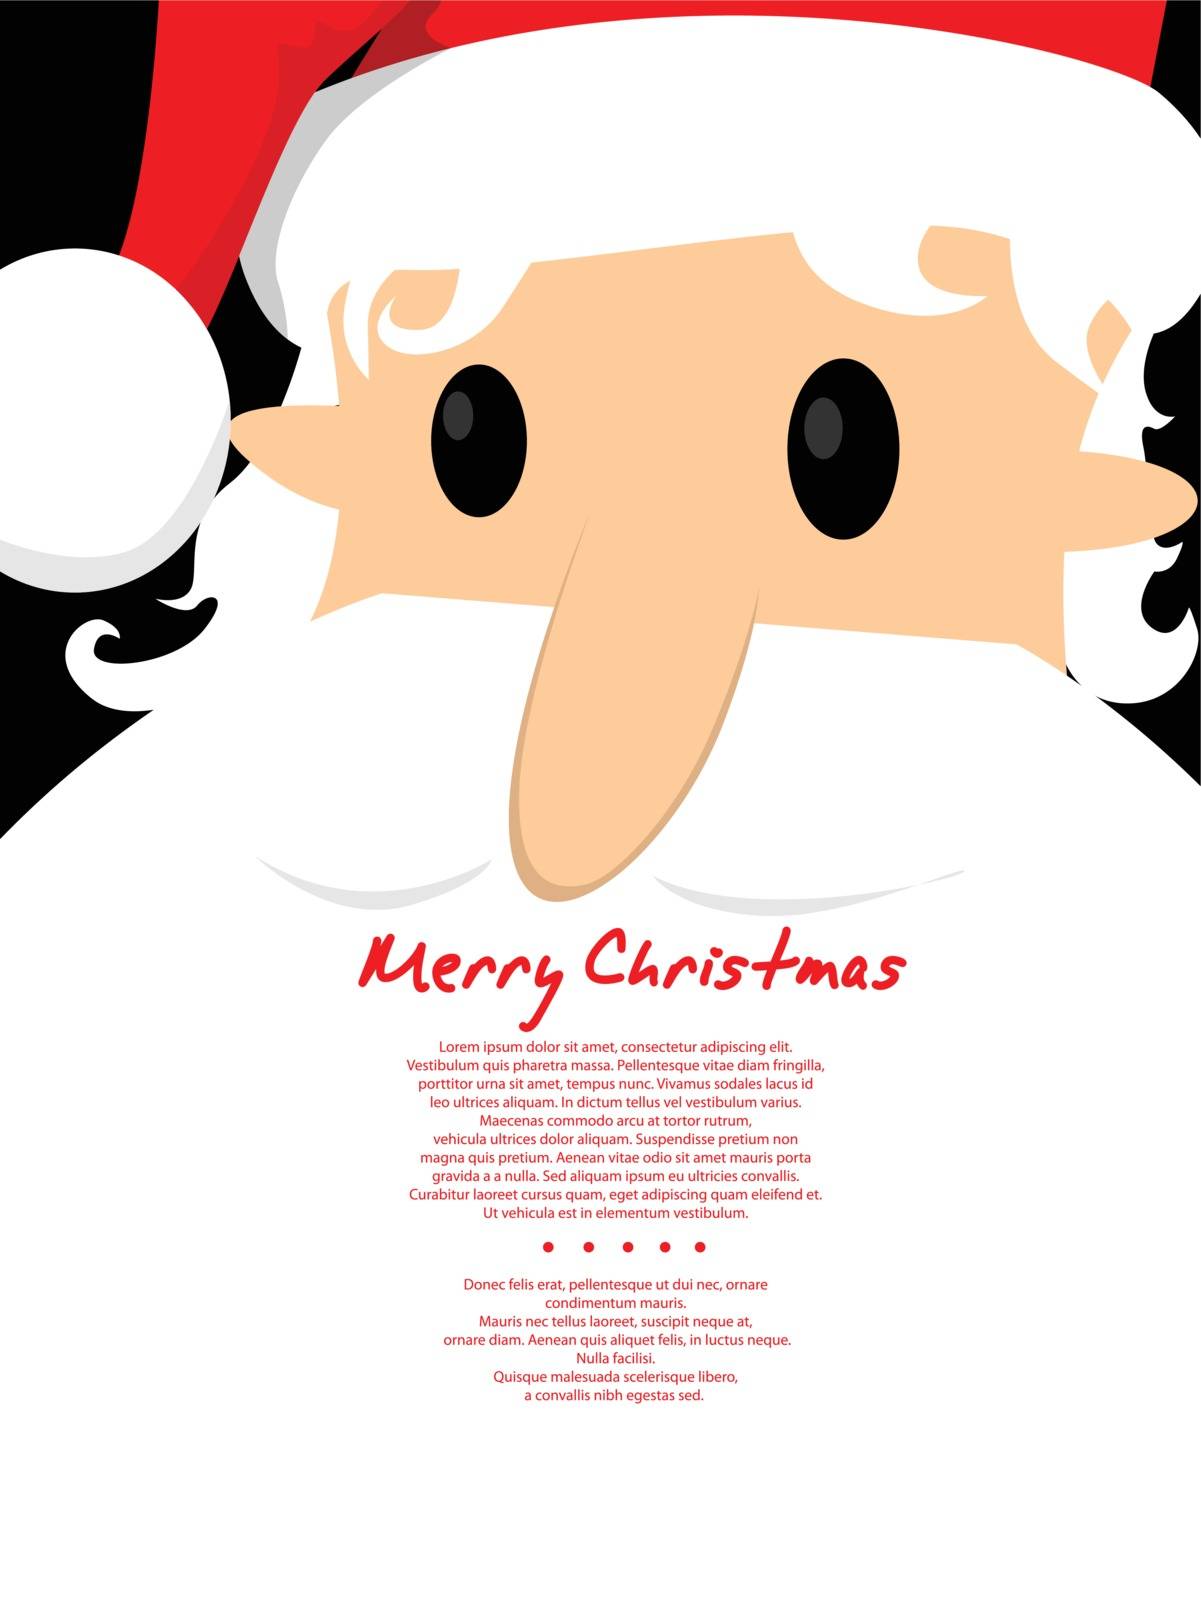 Merry Christmas Santa card by robin2